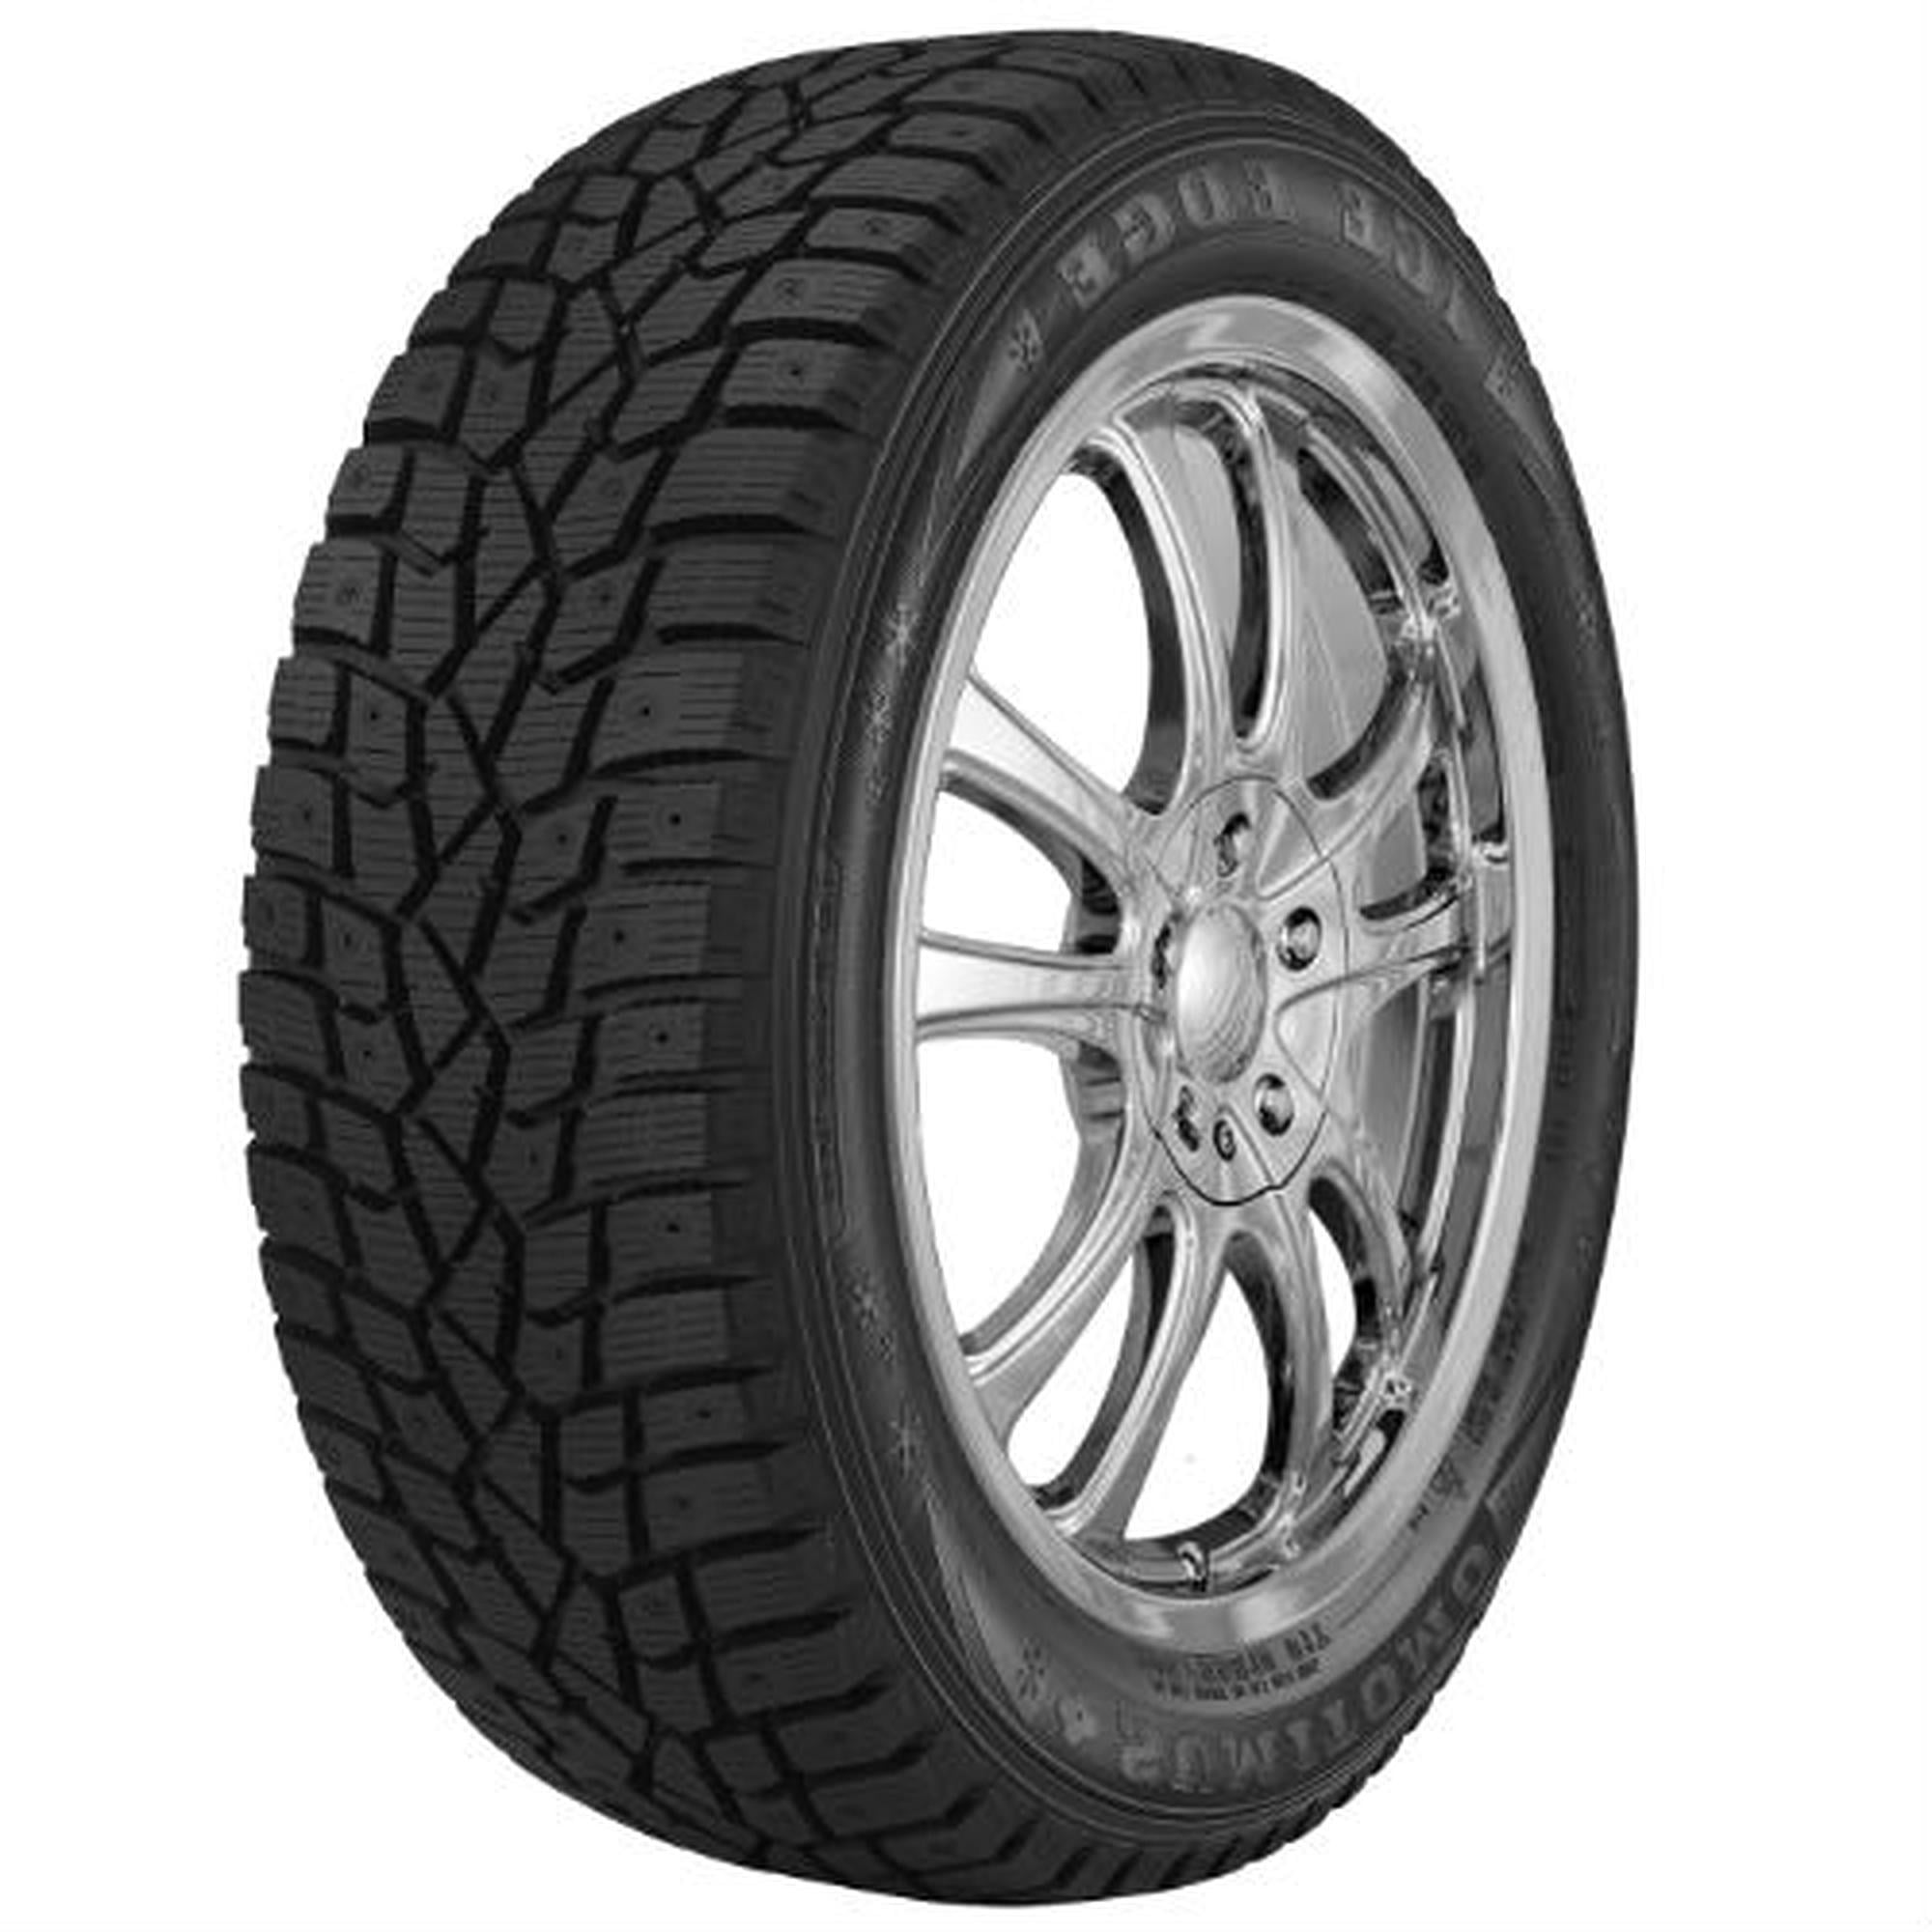 Dunlop Winter Maxx 185/65R15 88T (Studless) Snow Tire